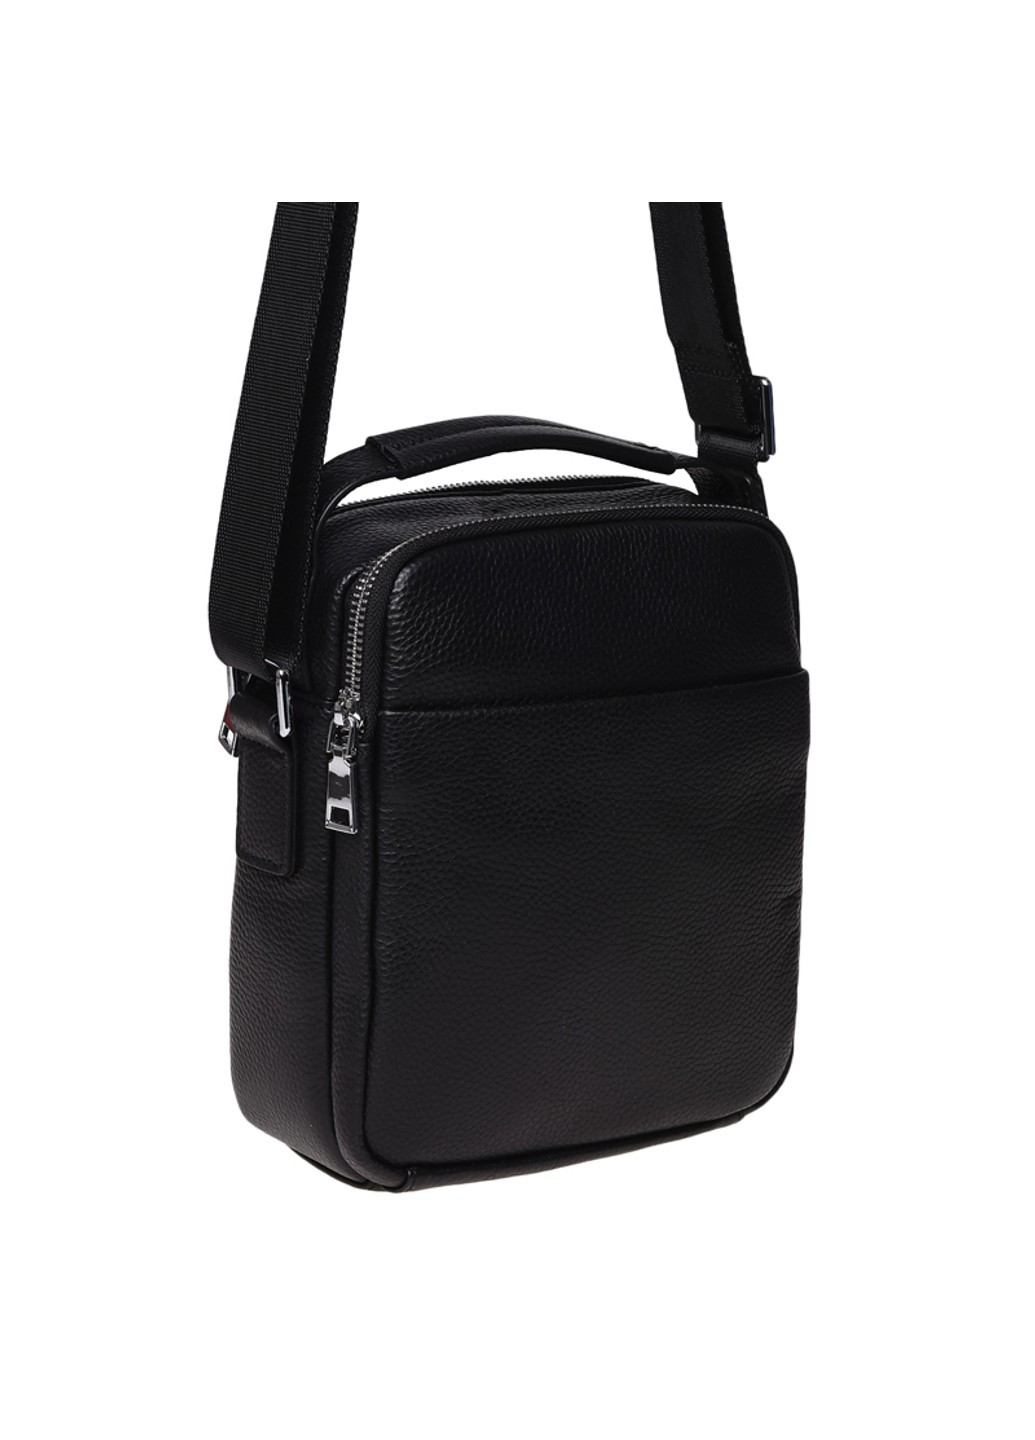 Мужская кожаная сумка K16406a-black Ricco Grande (271665107)